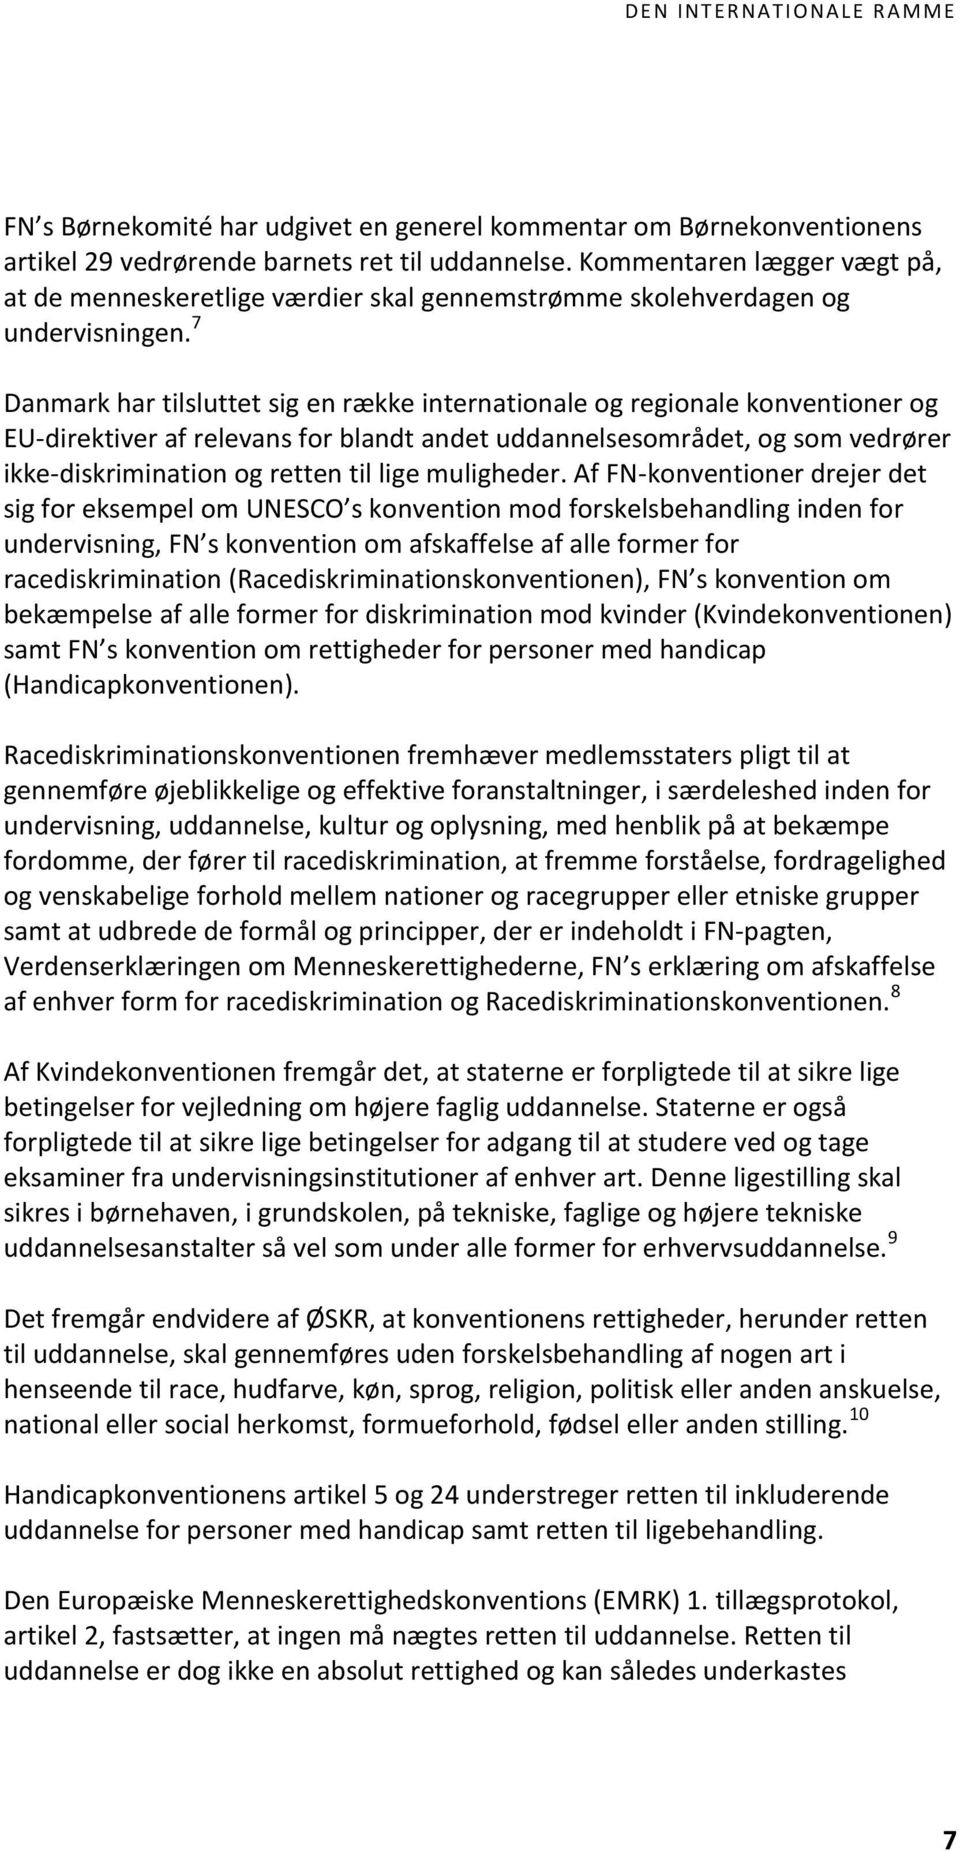 7 Danmark har tilsluttet sig en række internationale og regionale konventioner og EU-direktiver af relevans for blandt andet uddannelsesområdet, og som vedrører ikke-diskrimination og retten til lige